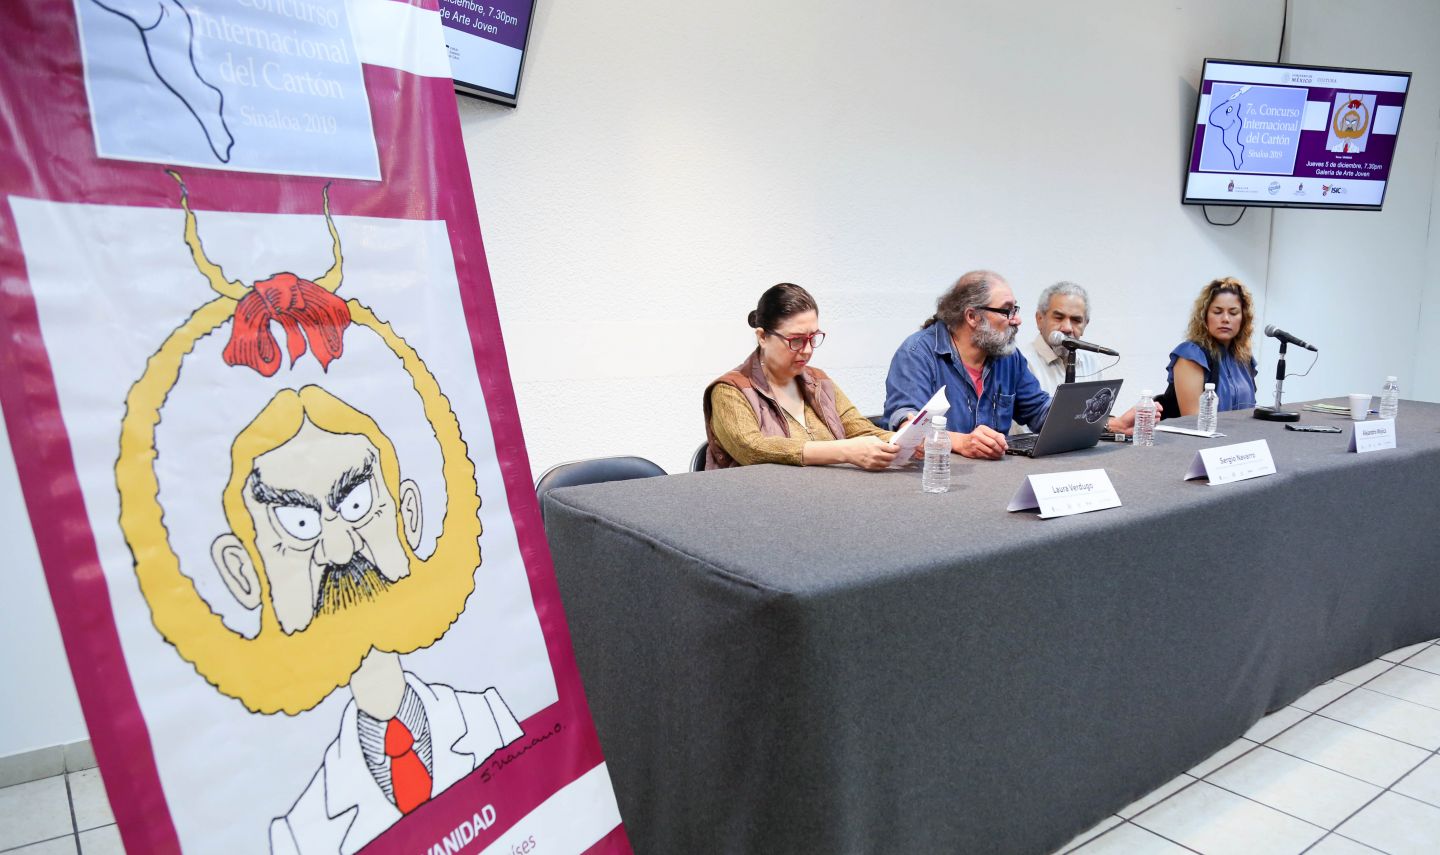 El jueves 05 abre la Expo del VII Concurso
Internacional de Cartón Sinaloa 2019